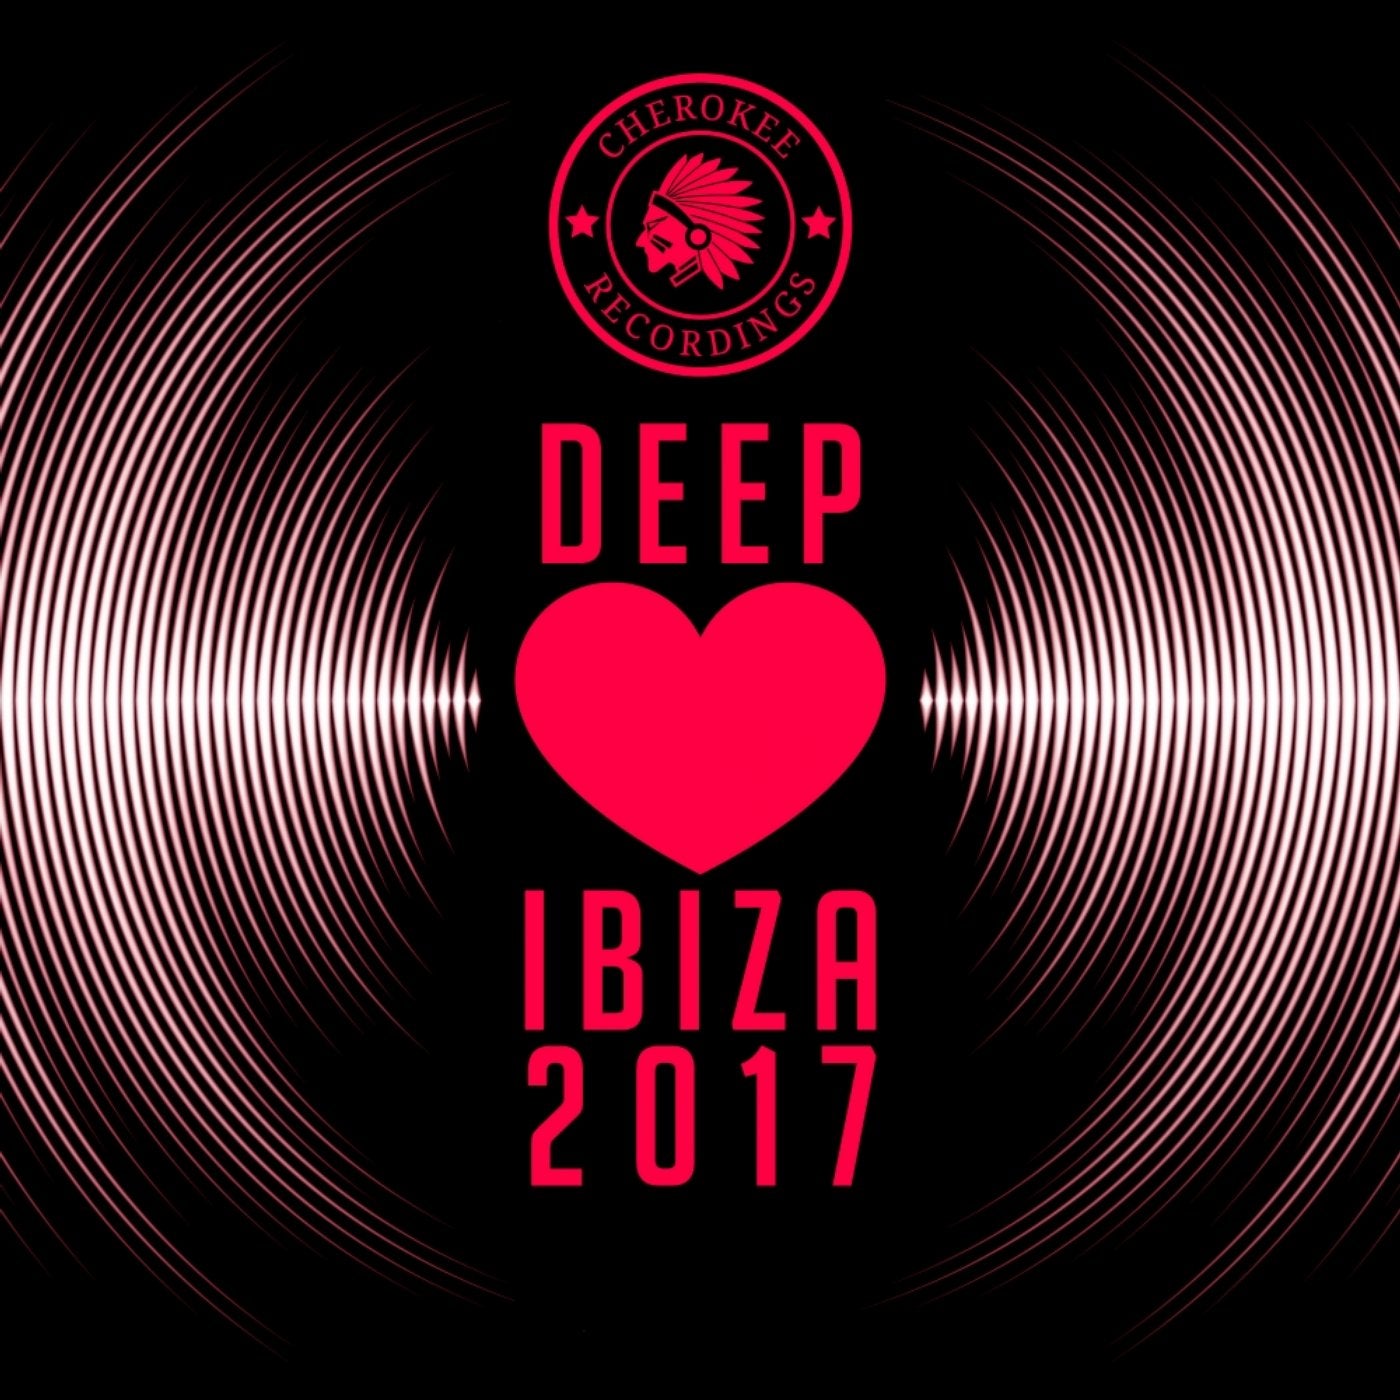 Deep Love Ibiza 2017